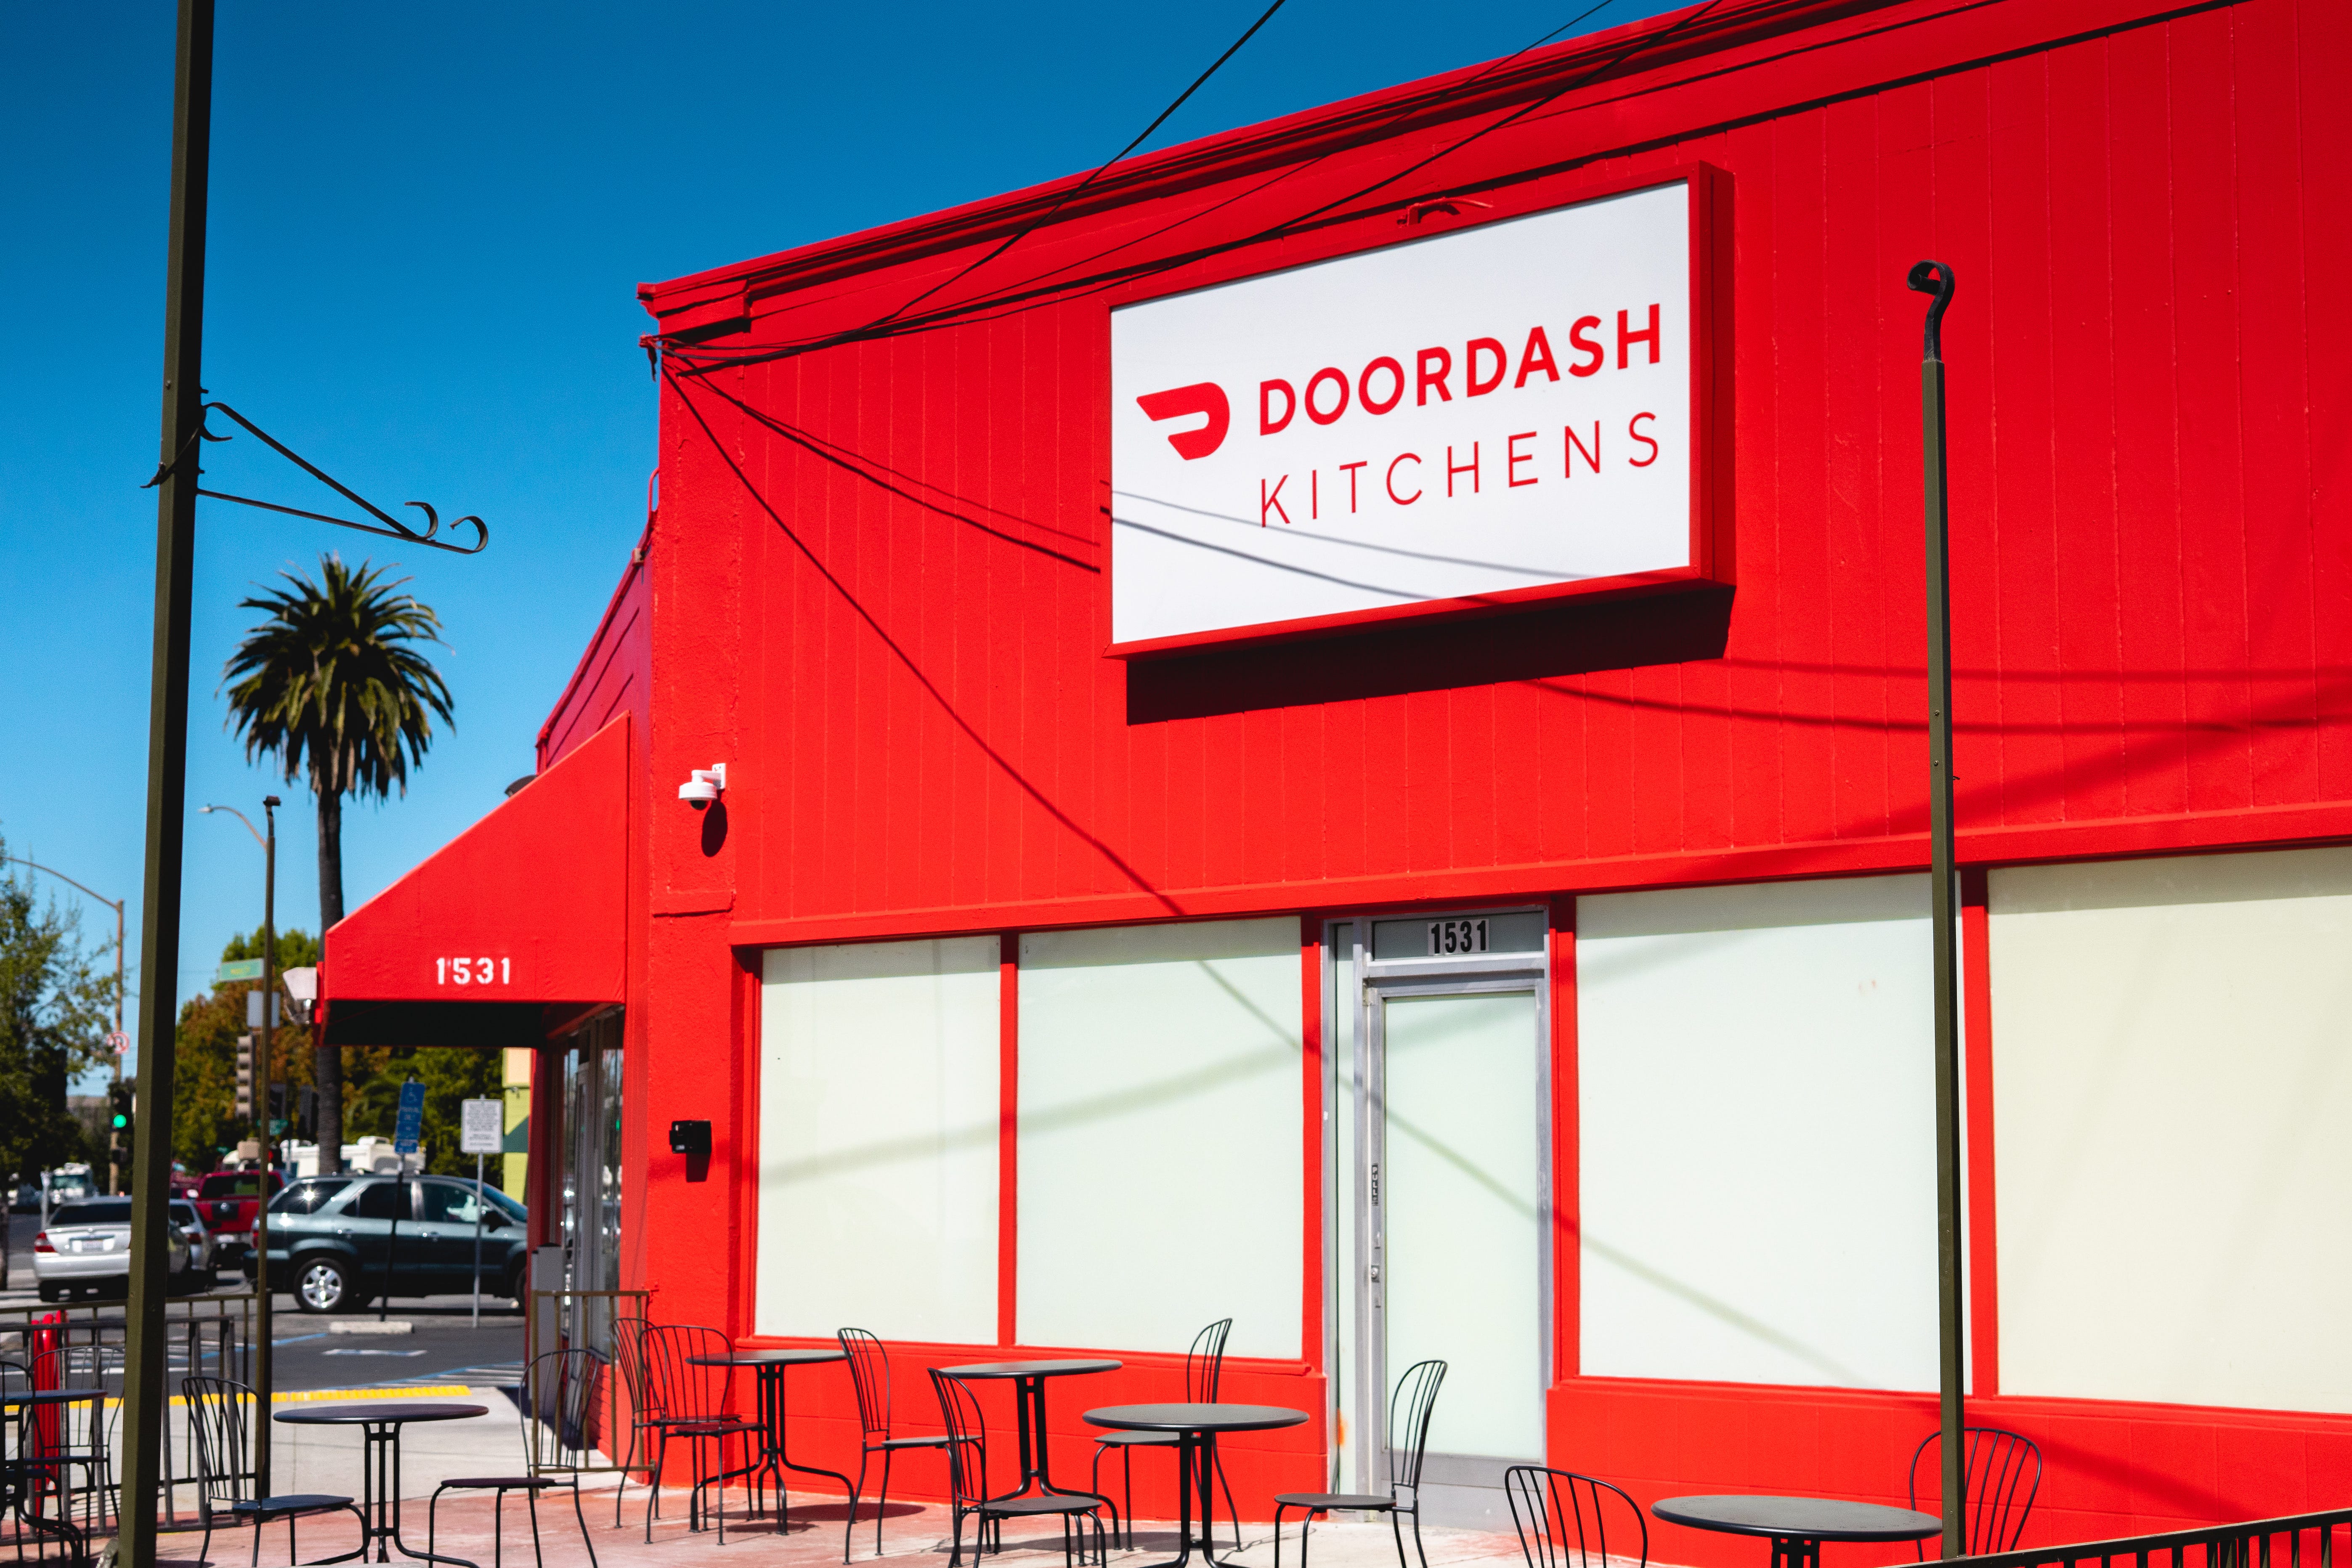 DoorDash Kitchens opens in the 